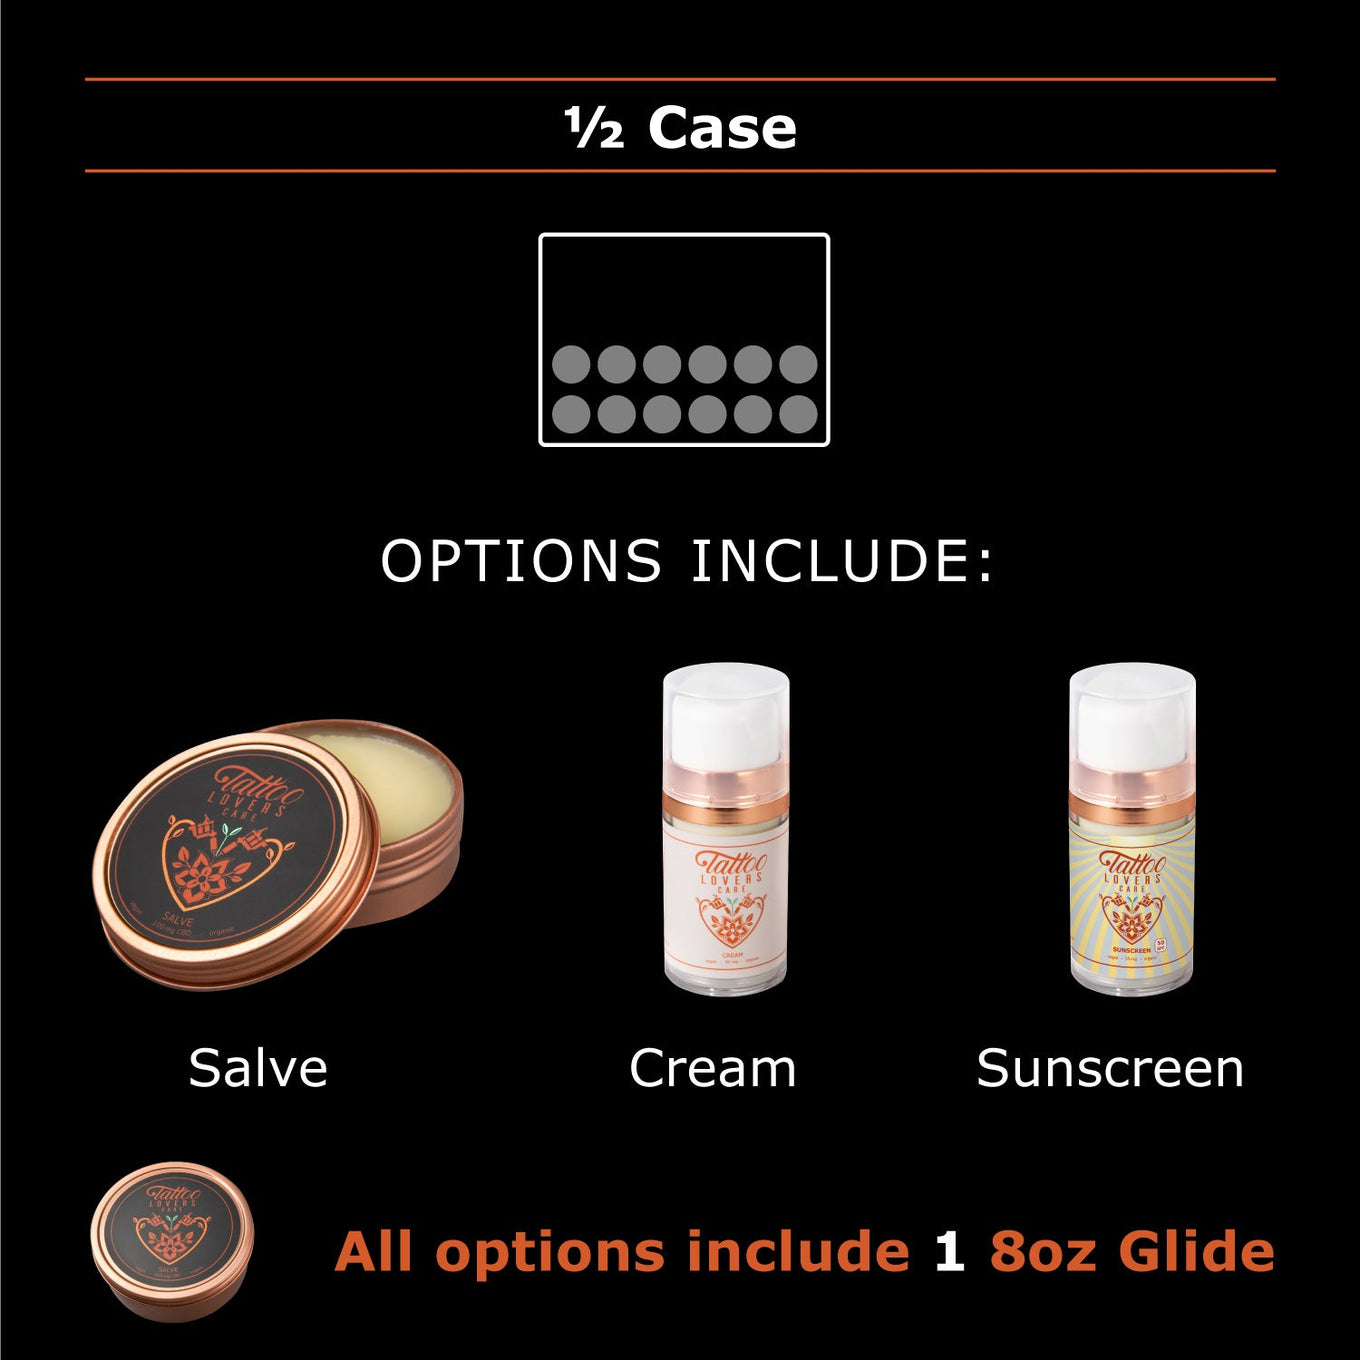 1/2 Case - 12 units(Salve, Cream, or Sunscreen)